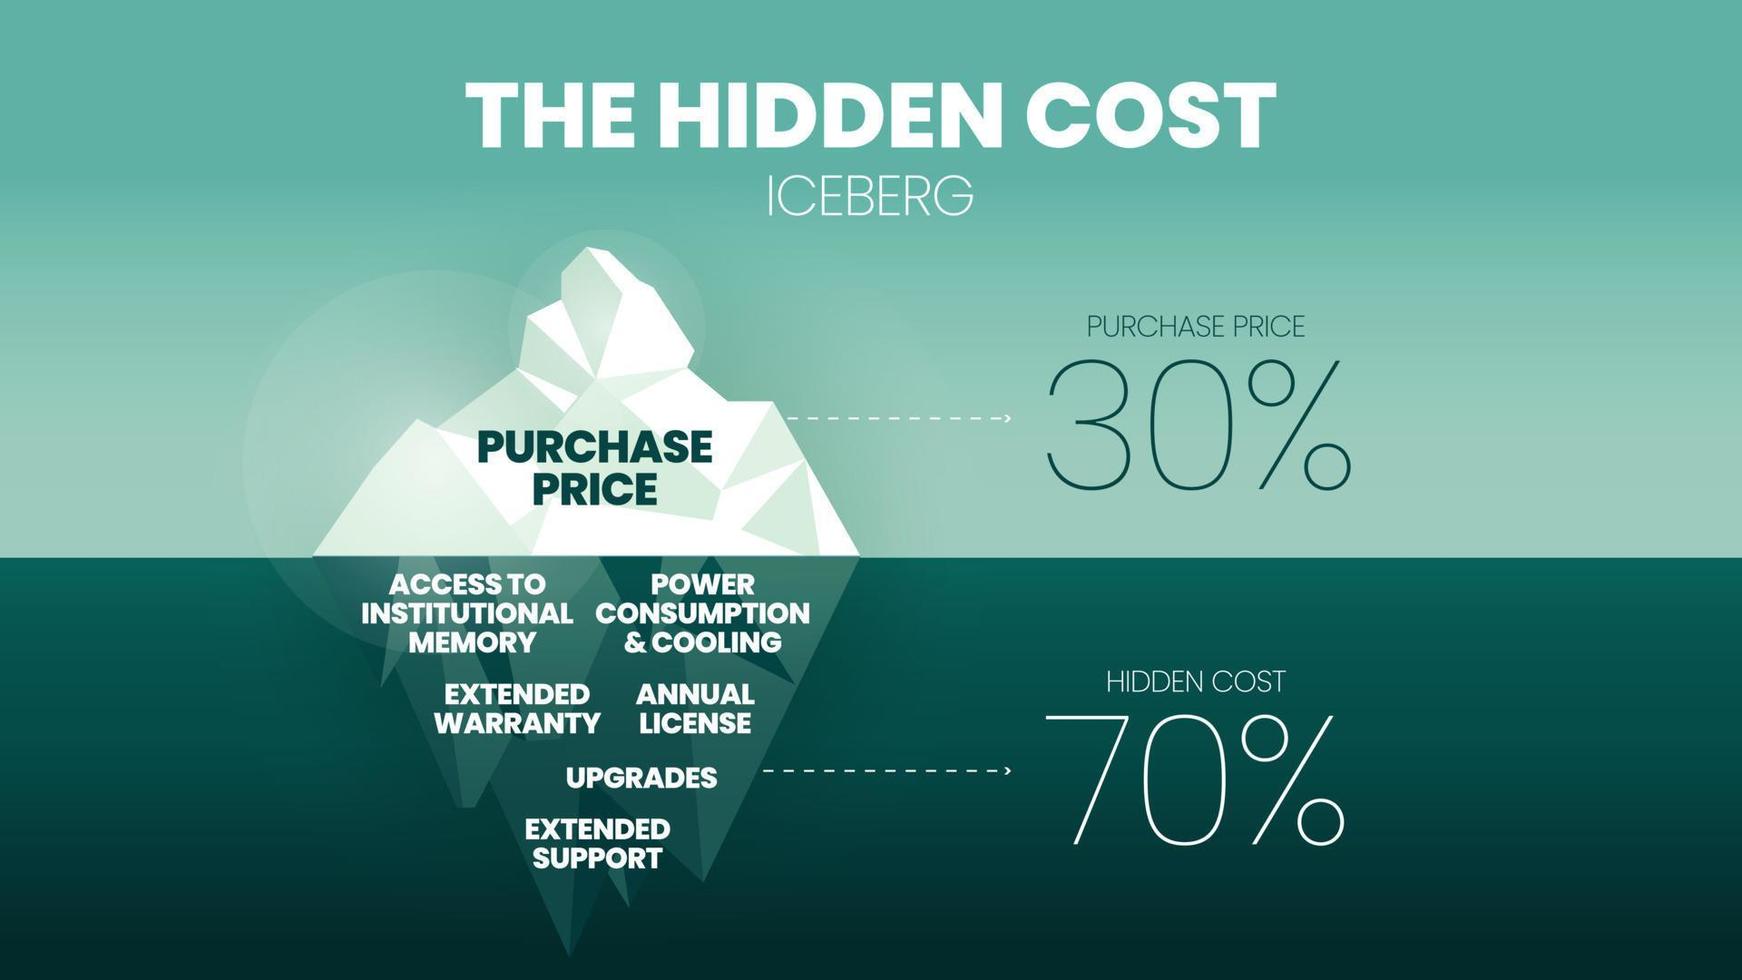 Der Eisberg der versteckten Kosten von 30 Prozent des Kaufpreises ist unter Wasser, wie jährliche Lizenzgebühren, Upgrades, Serviceunterstützung, Verbrauch und Kühlung, die 70 Prozent der gesamten Anschaffungskosten ausmachen. vektor